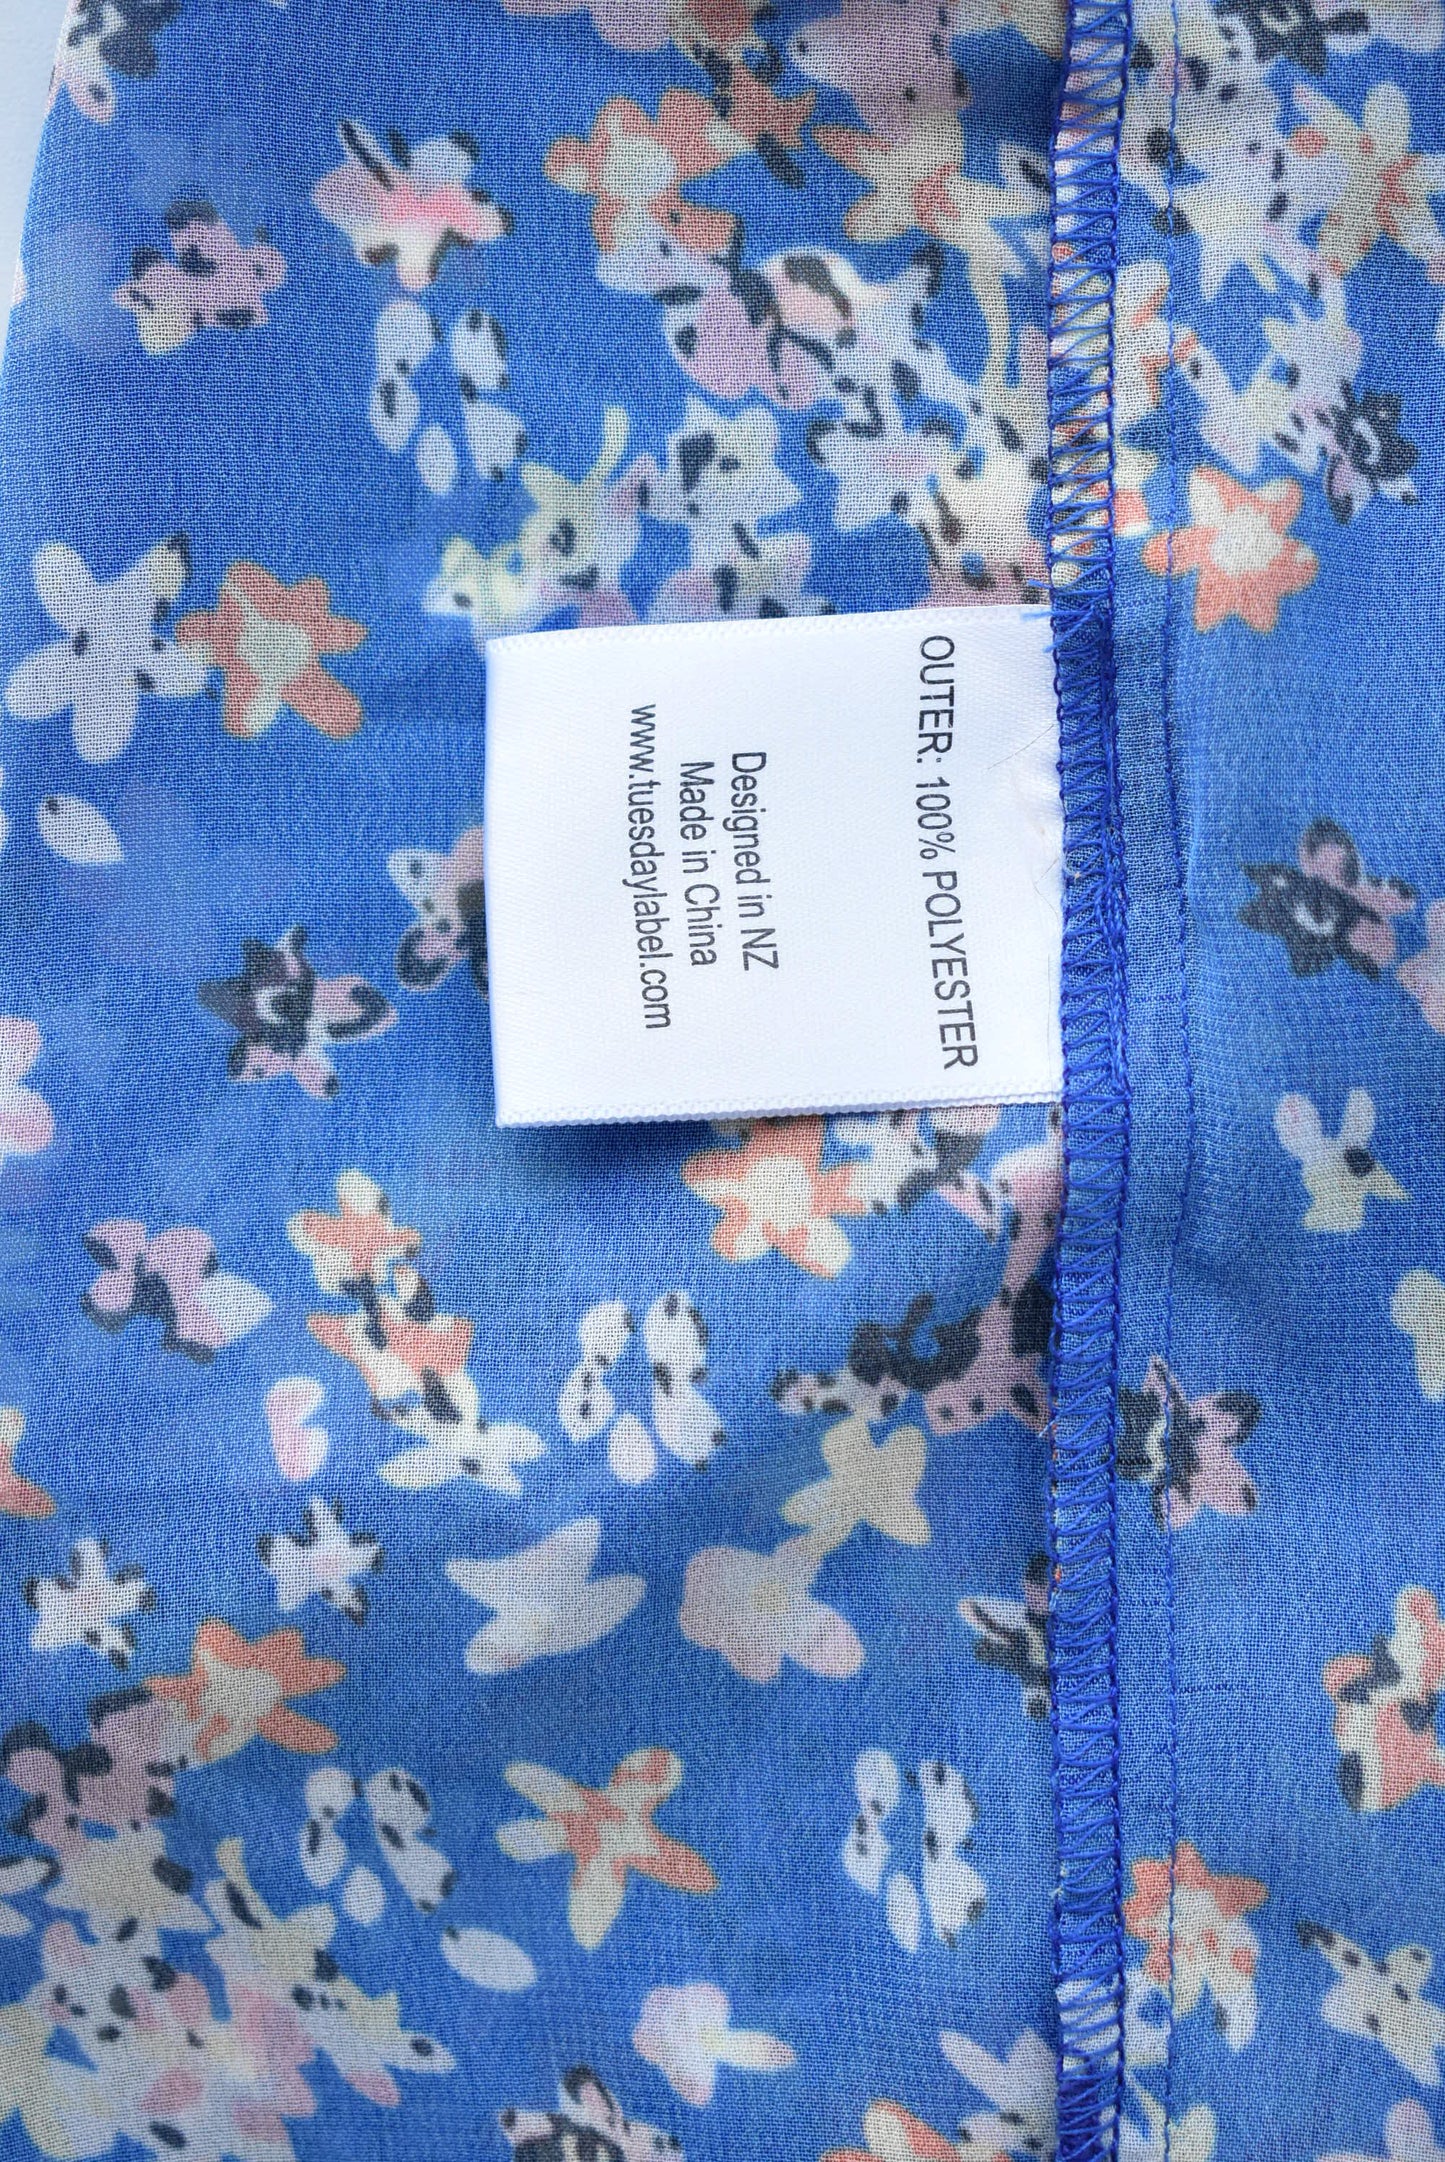 Tuesday blue floral drape top, size M